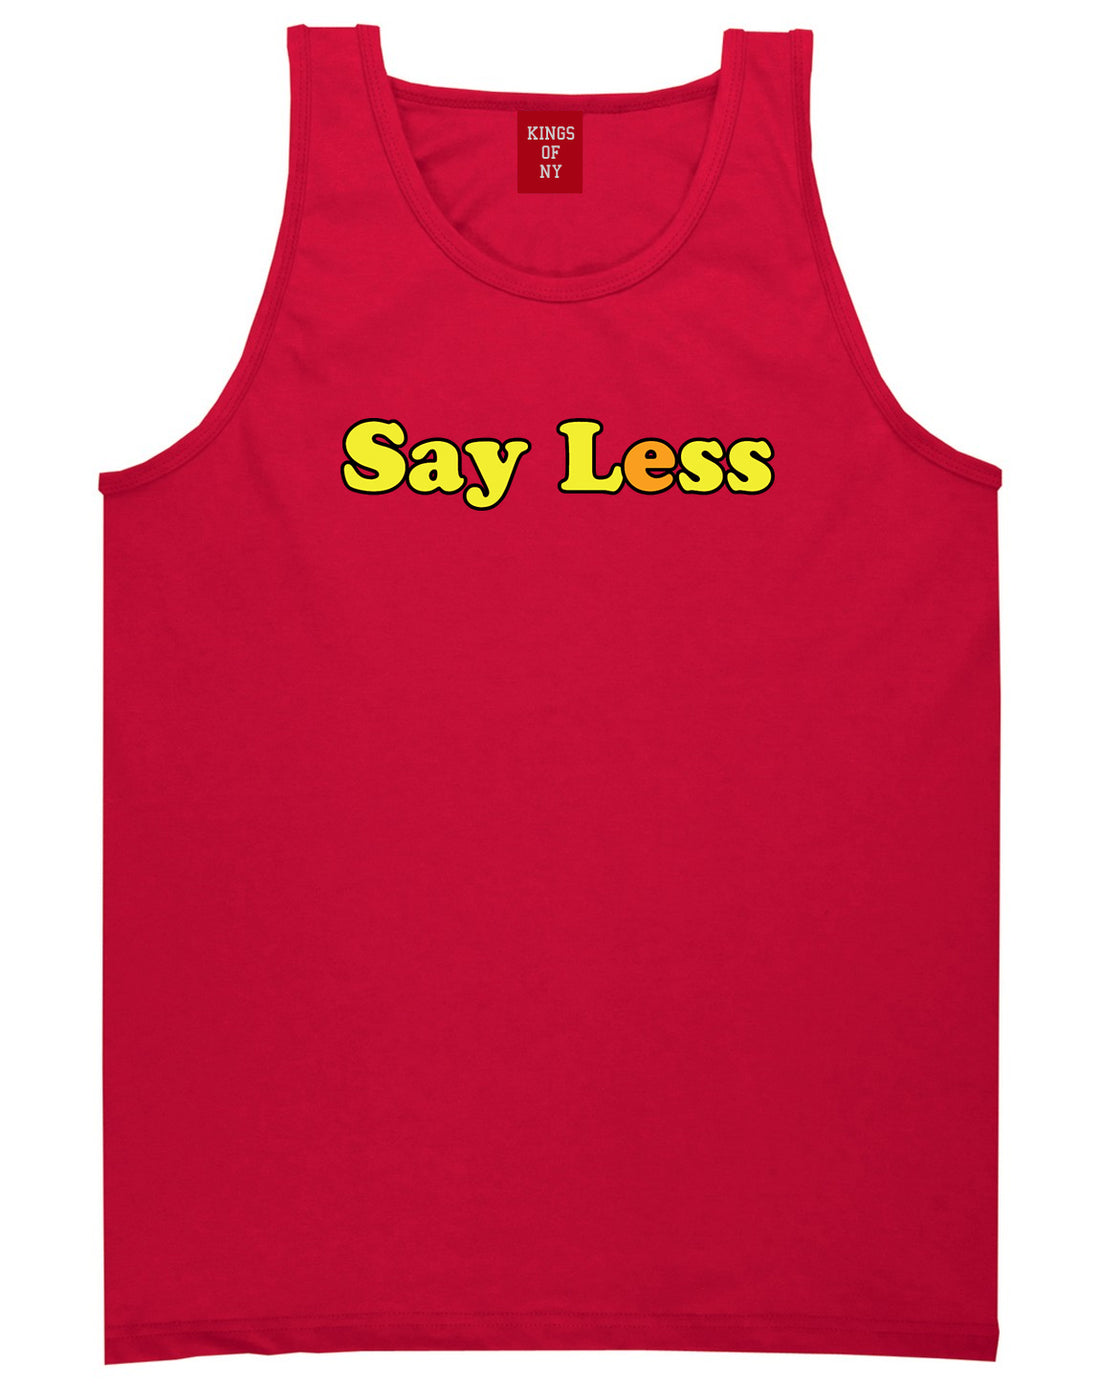 Say Less Mens Tank Top Shirt Red